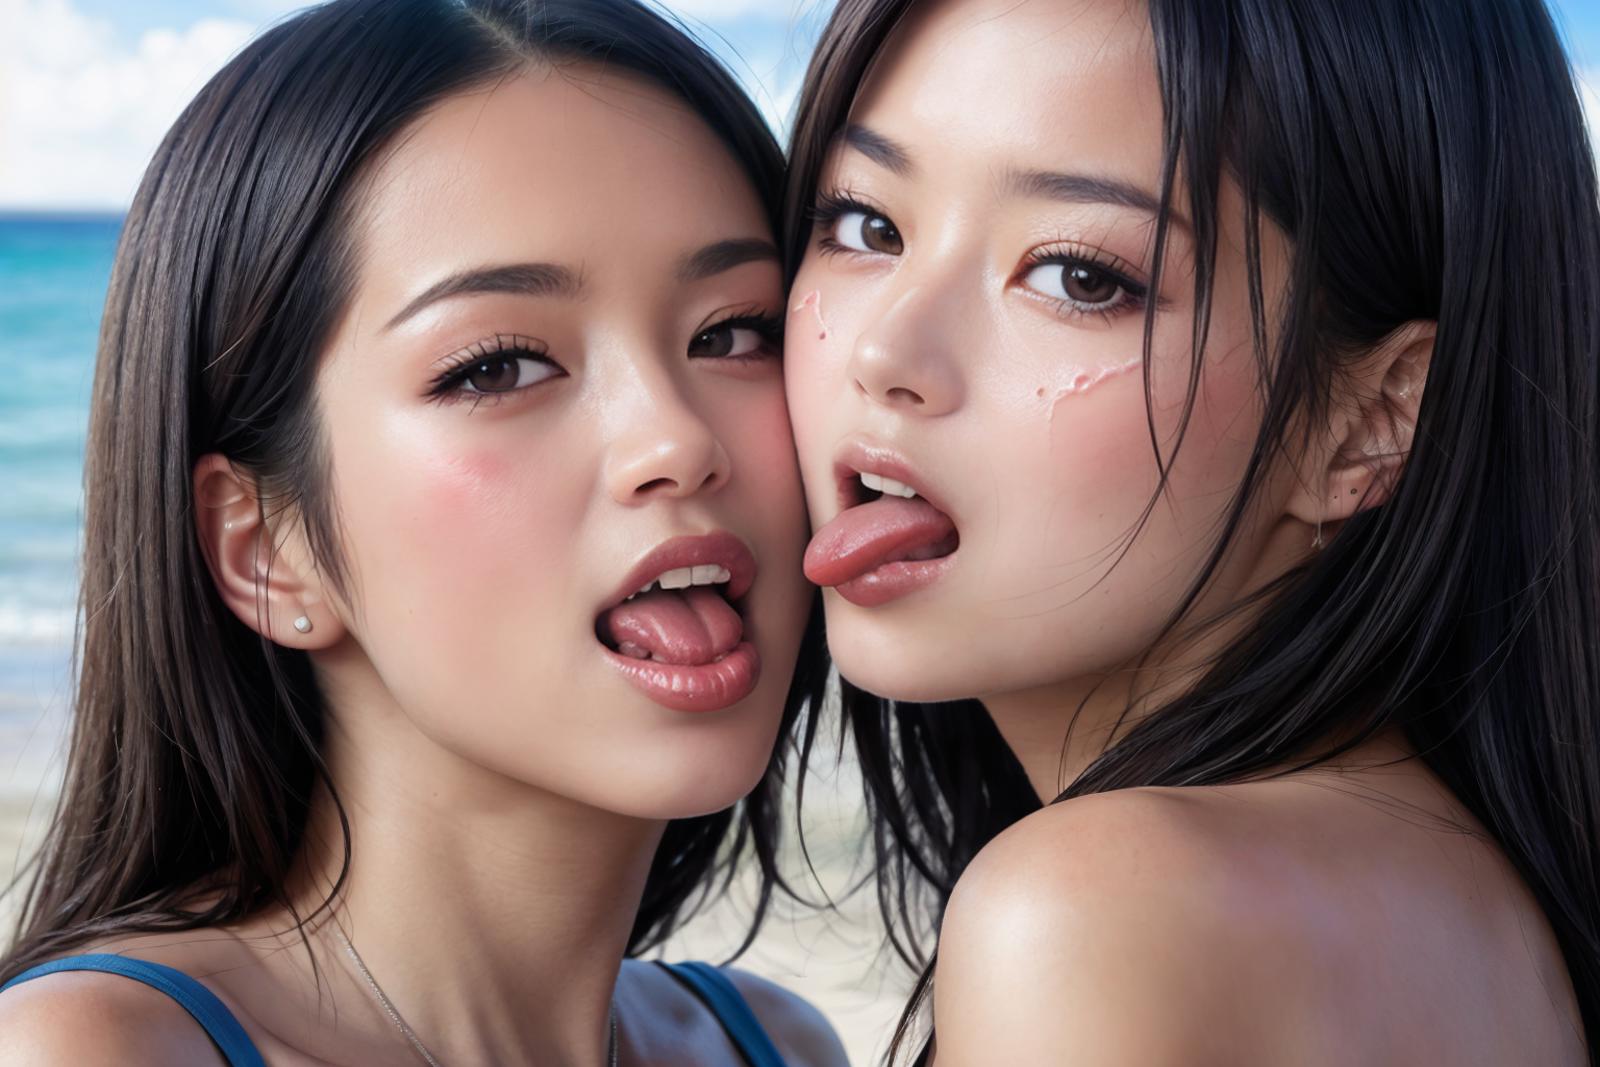 PornMaster-女同性恋舌吻-lesbian tongue kissing image by chihayatan